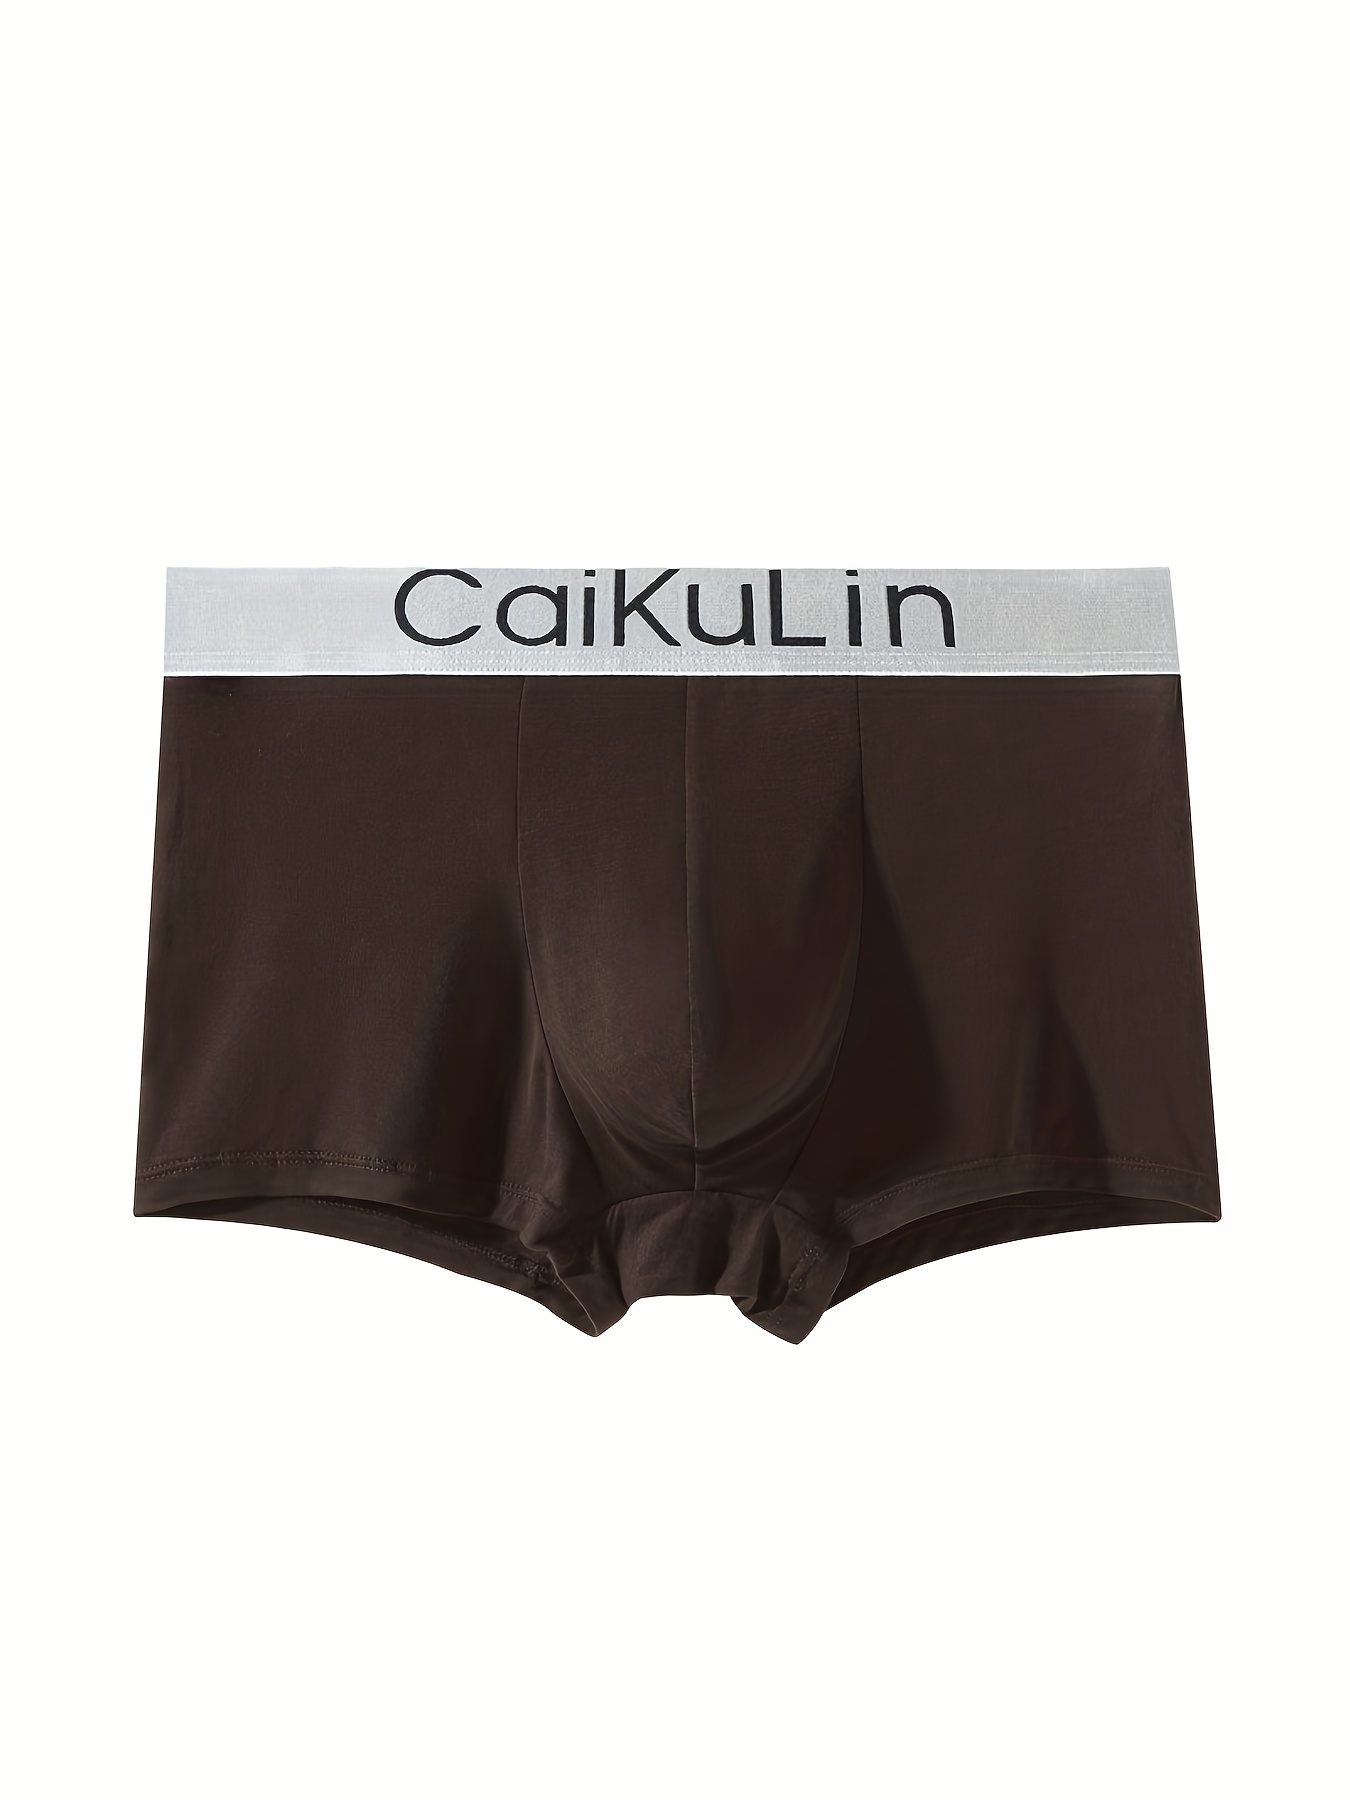 Calvin Klein Bikini Size Medium Briefs Set of 6 Pieces Multi Color